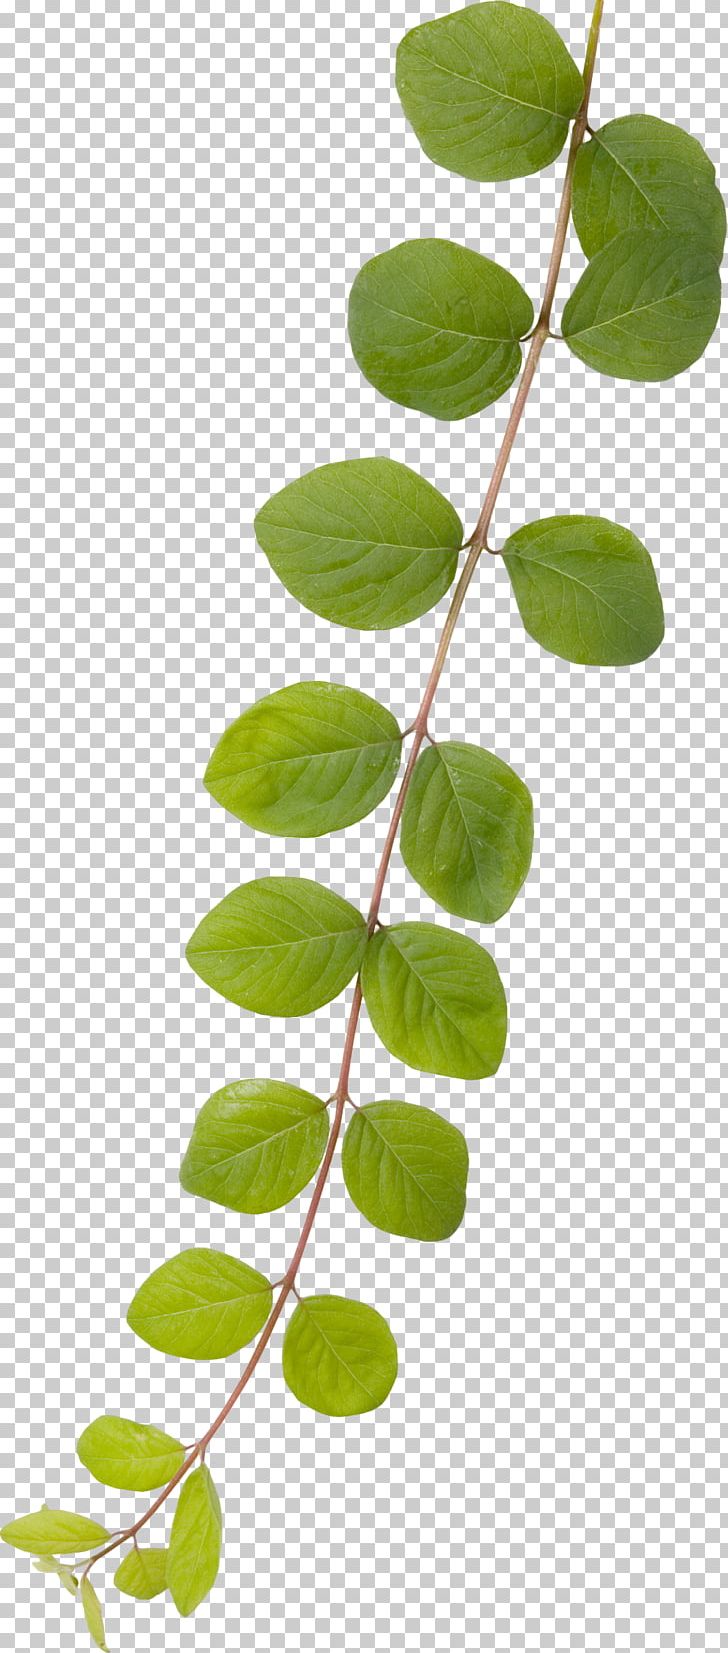 Leaf Branch Green PNG, Clipart, Branch, Gratis, Green, Leaf, Plant Free PNG Download